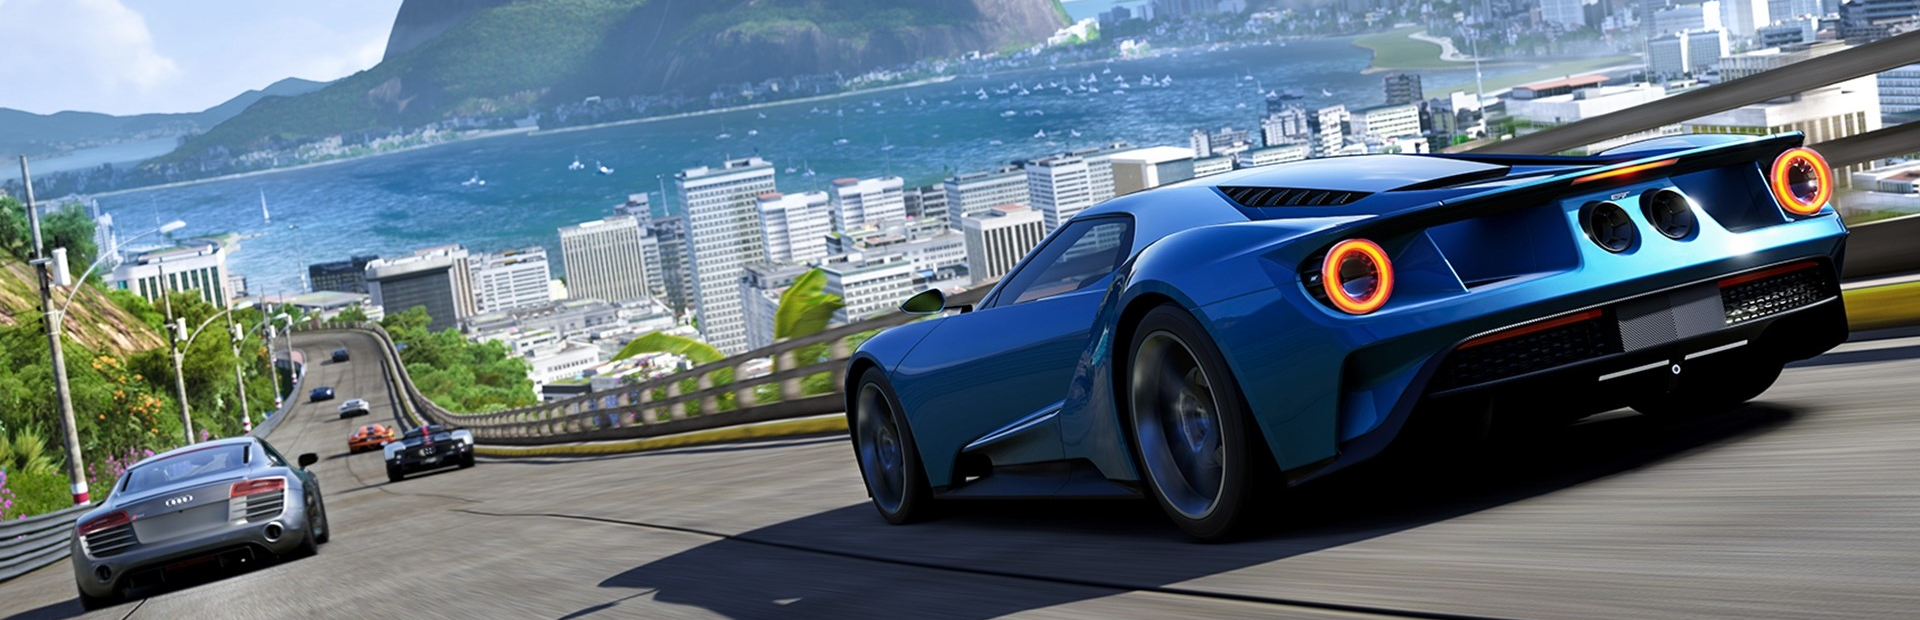 Forza Motorsport 6 - vgBR